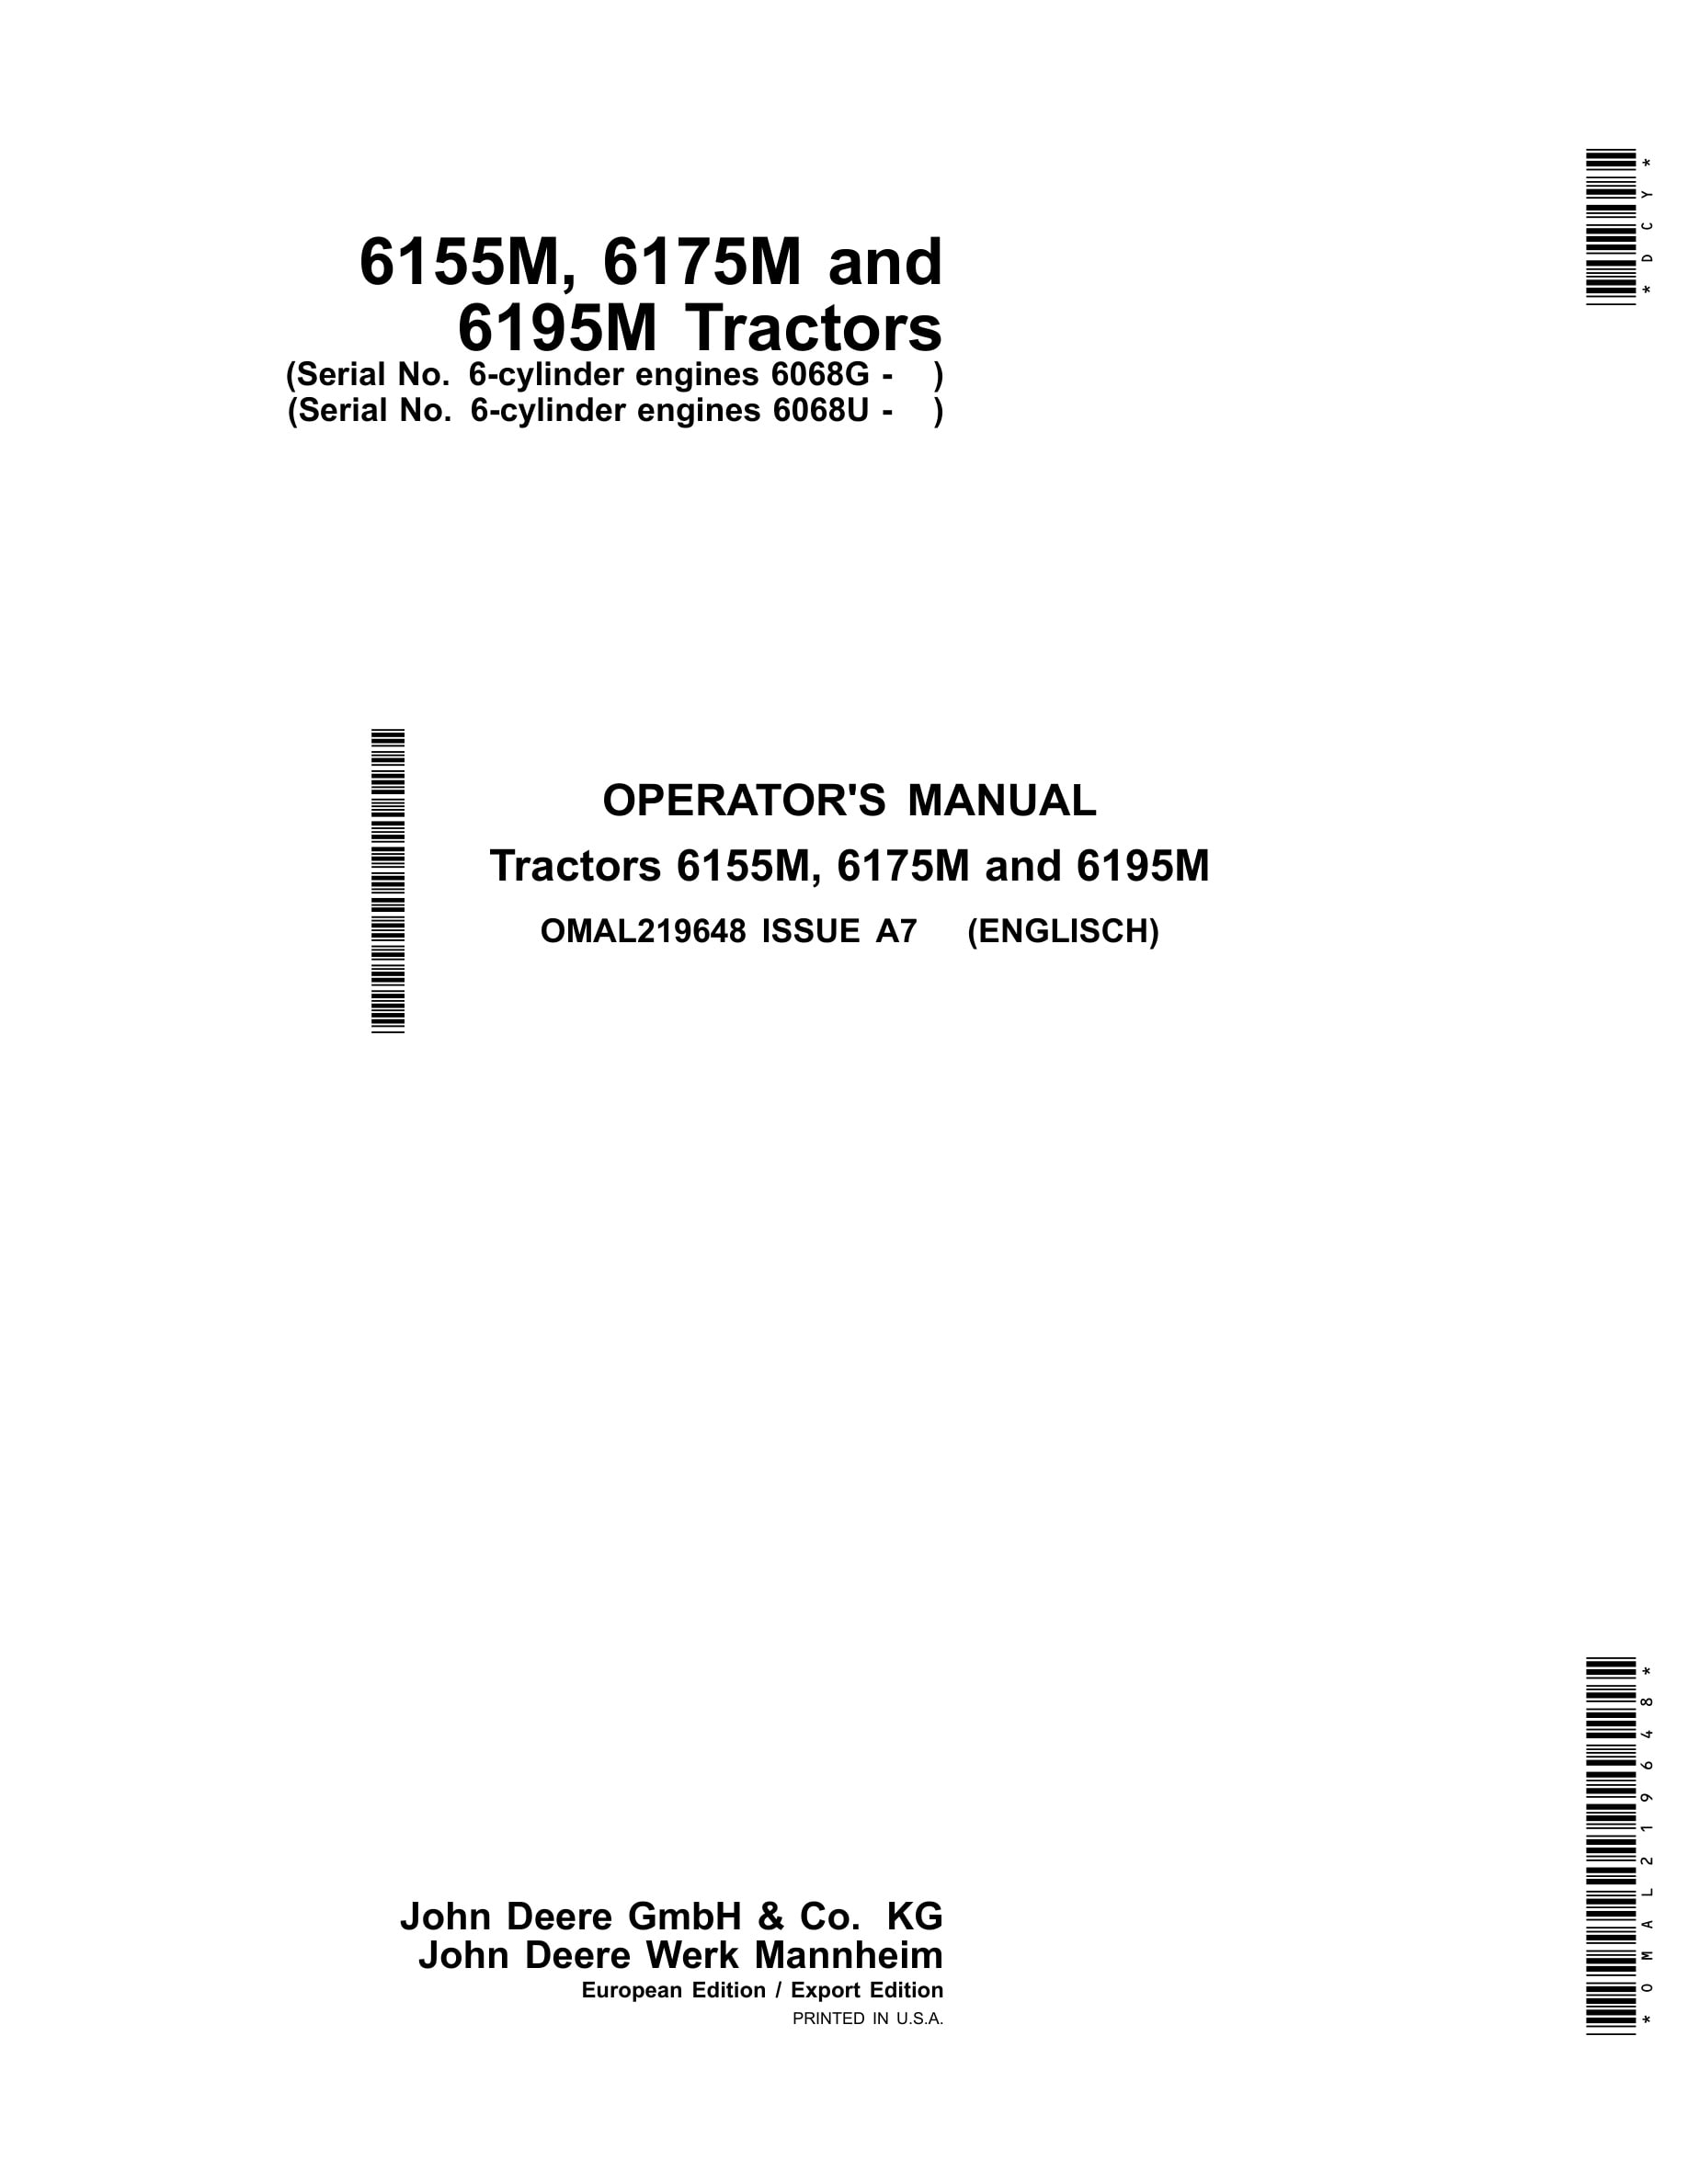 John Deere 6155m, 6175m And 6195m Tractors Operator Manuals OMAL219648-1